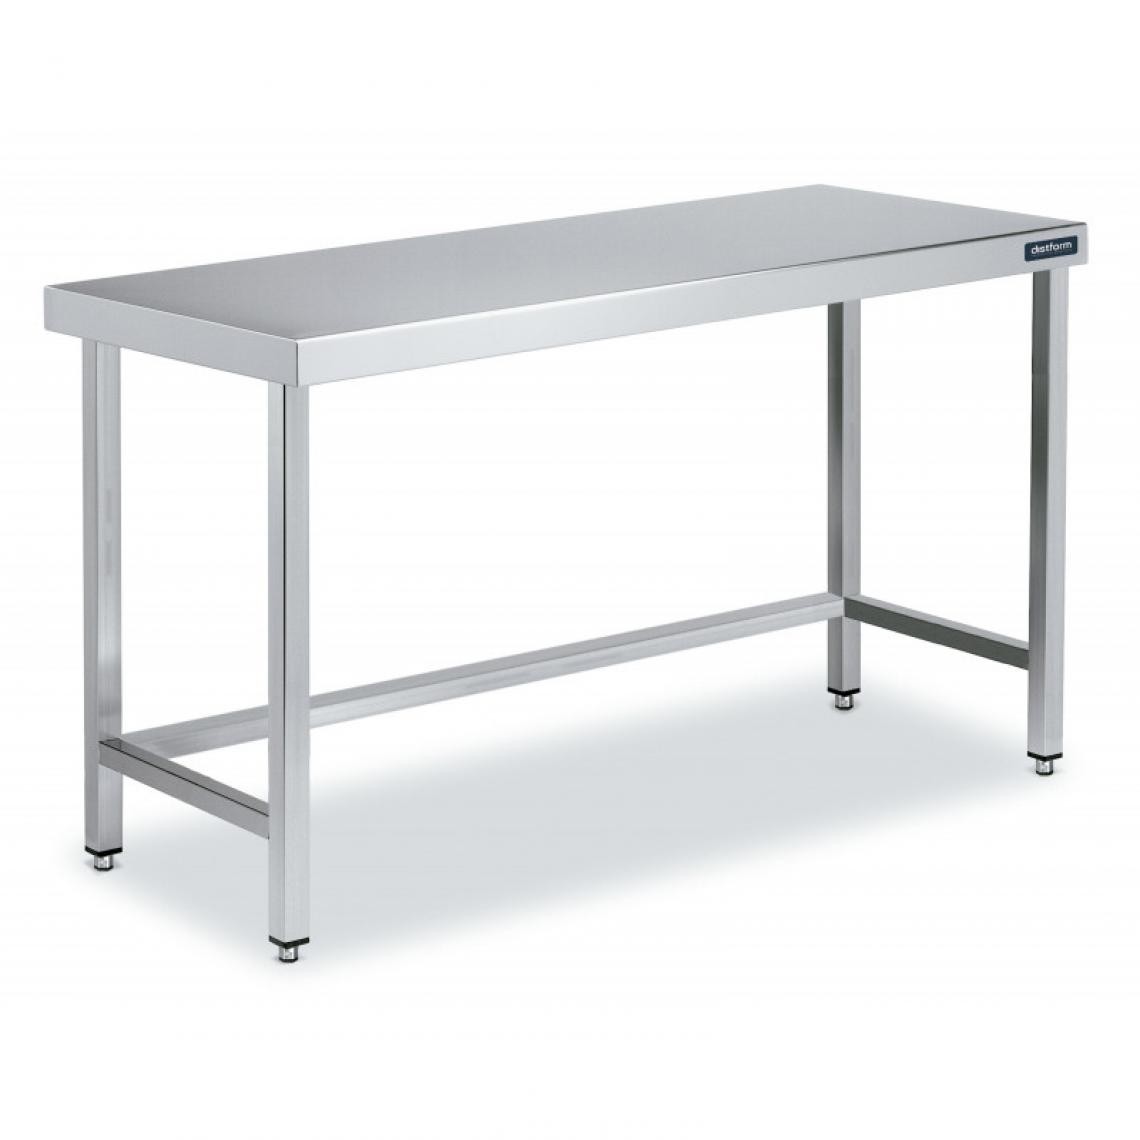 DISTFORM - Table Centrale en Inox avec renforts Profondeur 700 mm - Distform - Acier inoxydable1000x700 - Tables à manger